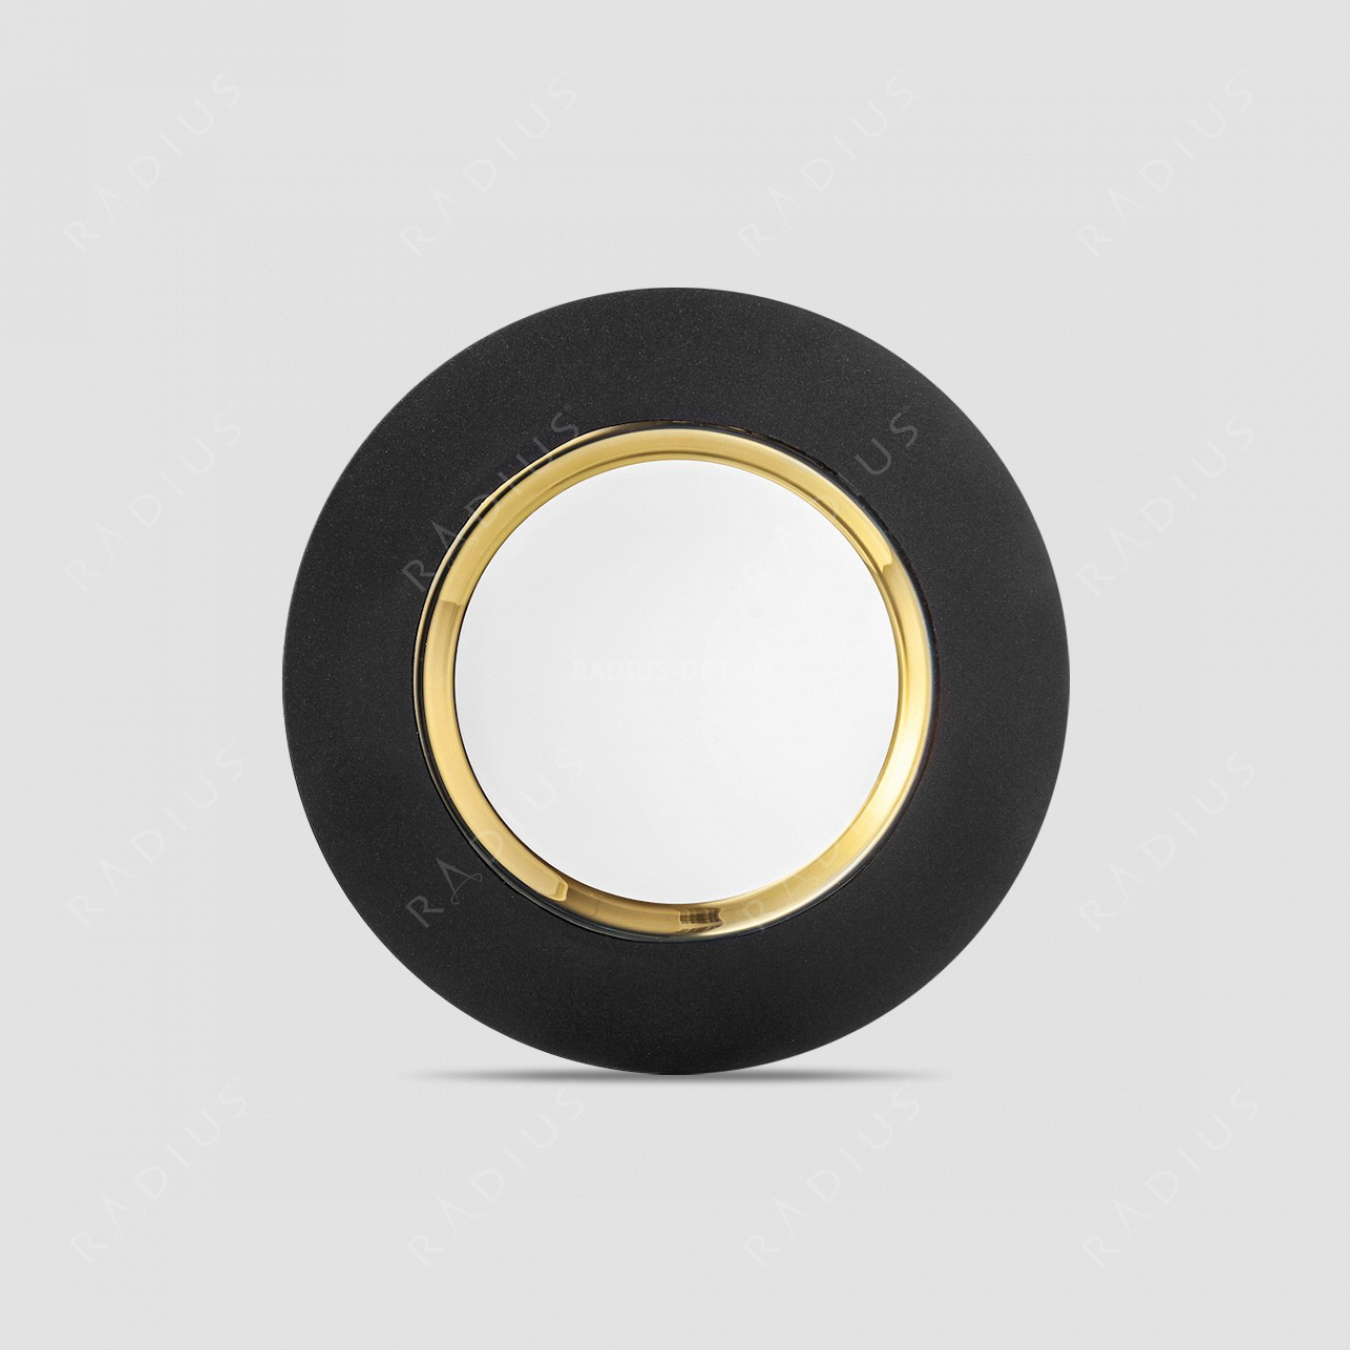 Тарелка Gold, диаметр: 25 см, материал: бессвинцовый хрусталь, цвет: черный/золото, серия Cosmo, EISCH, Германия